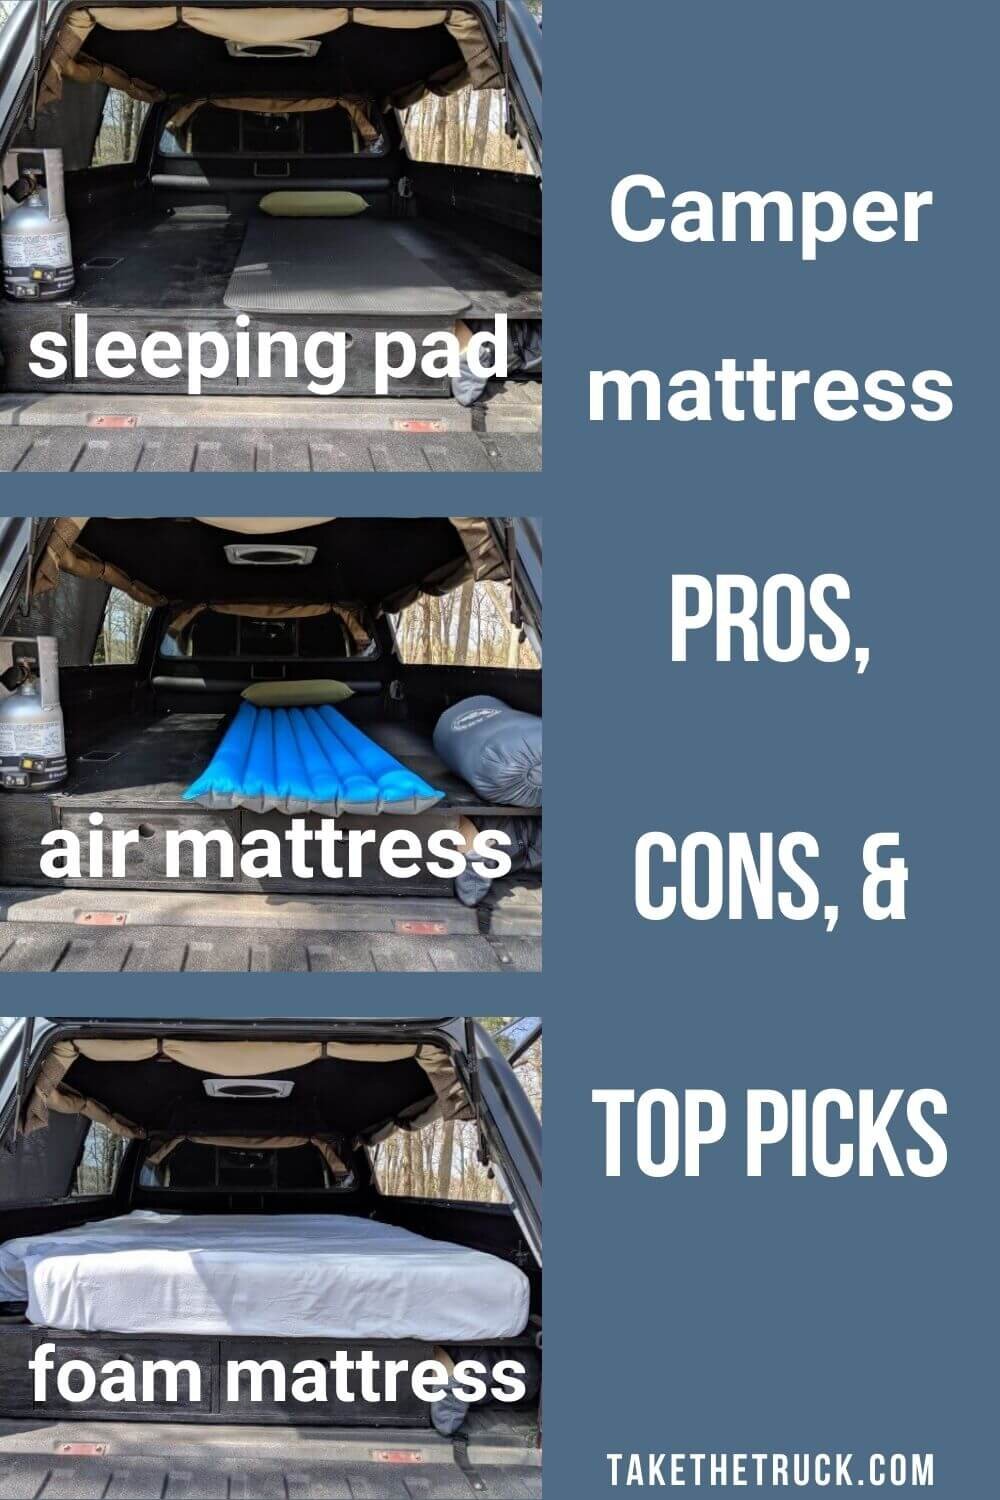 A great comparison of camping mattresses - camping air mattress, memory foam mattress, and sleeping pad as a SUV mattress, truck bed mattress, minivan mattress, or car mattress.